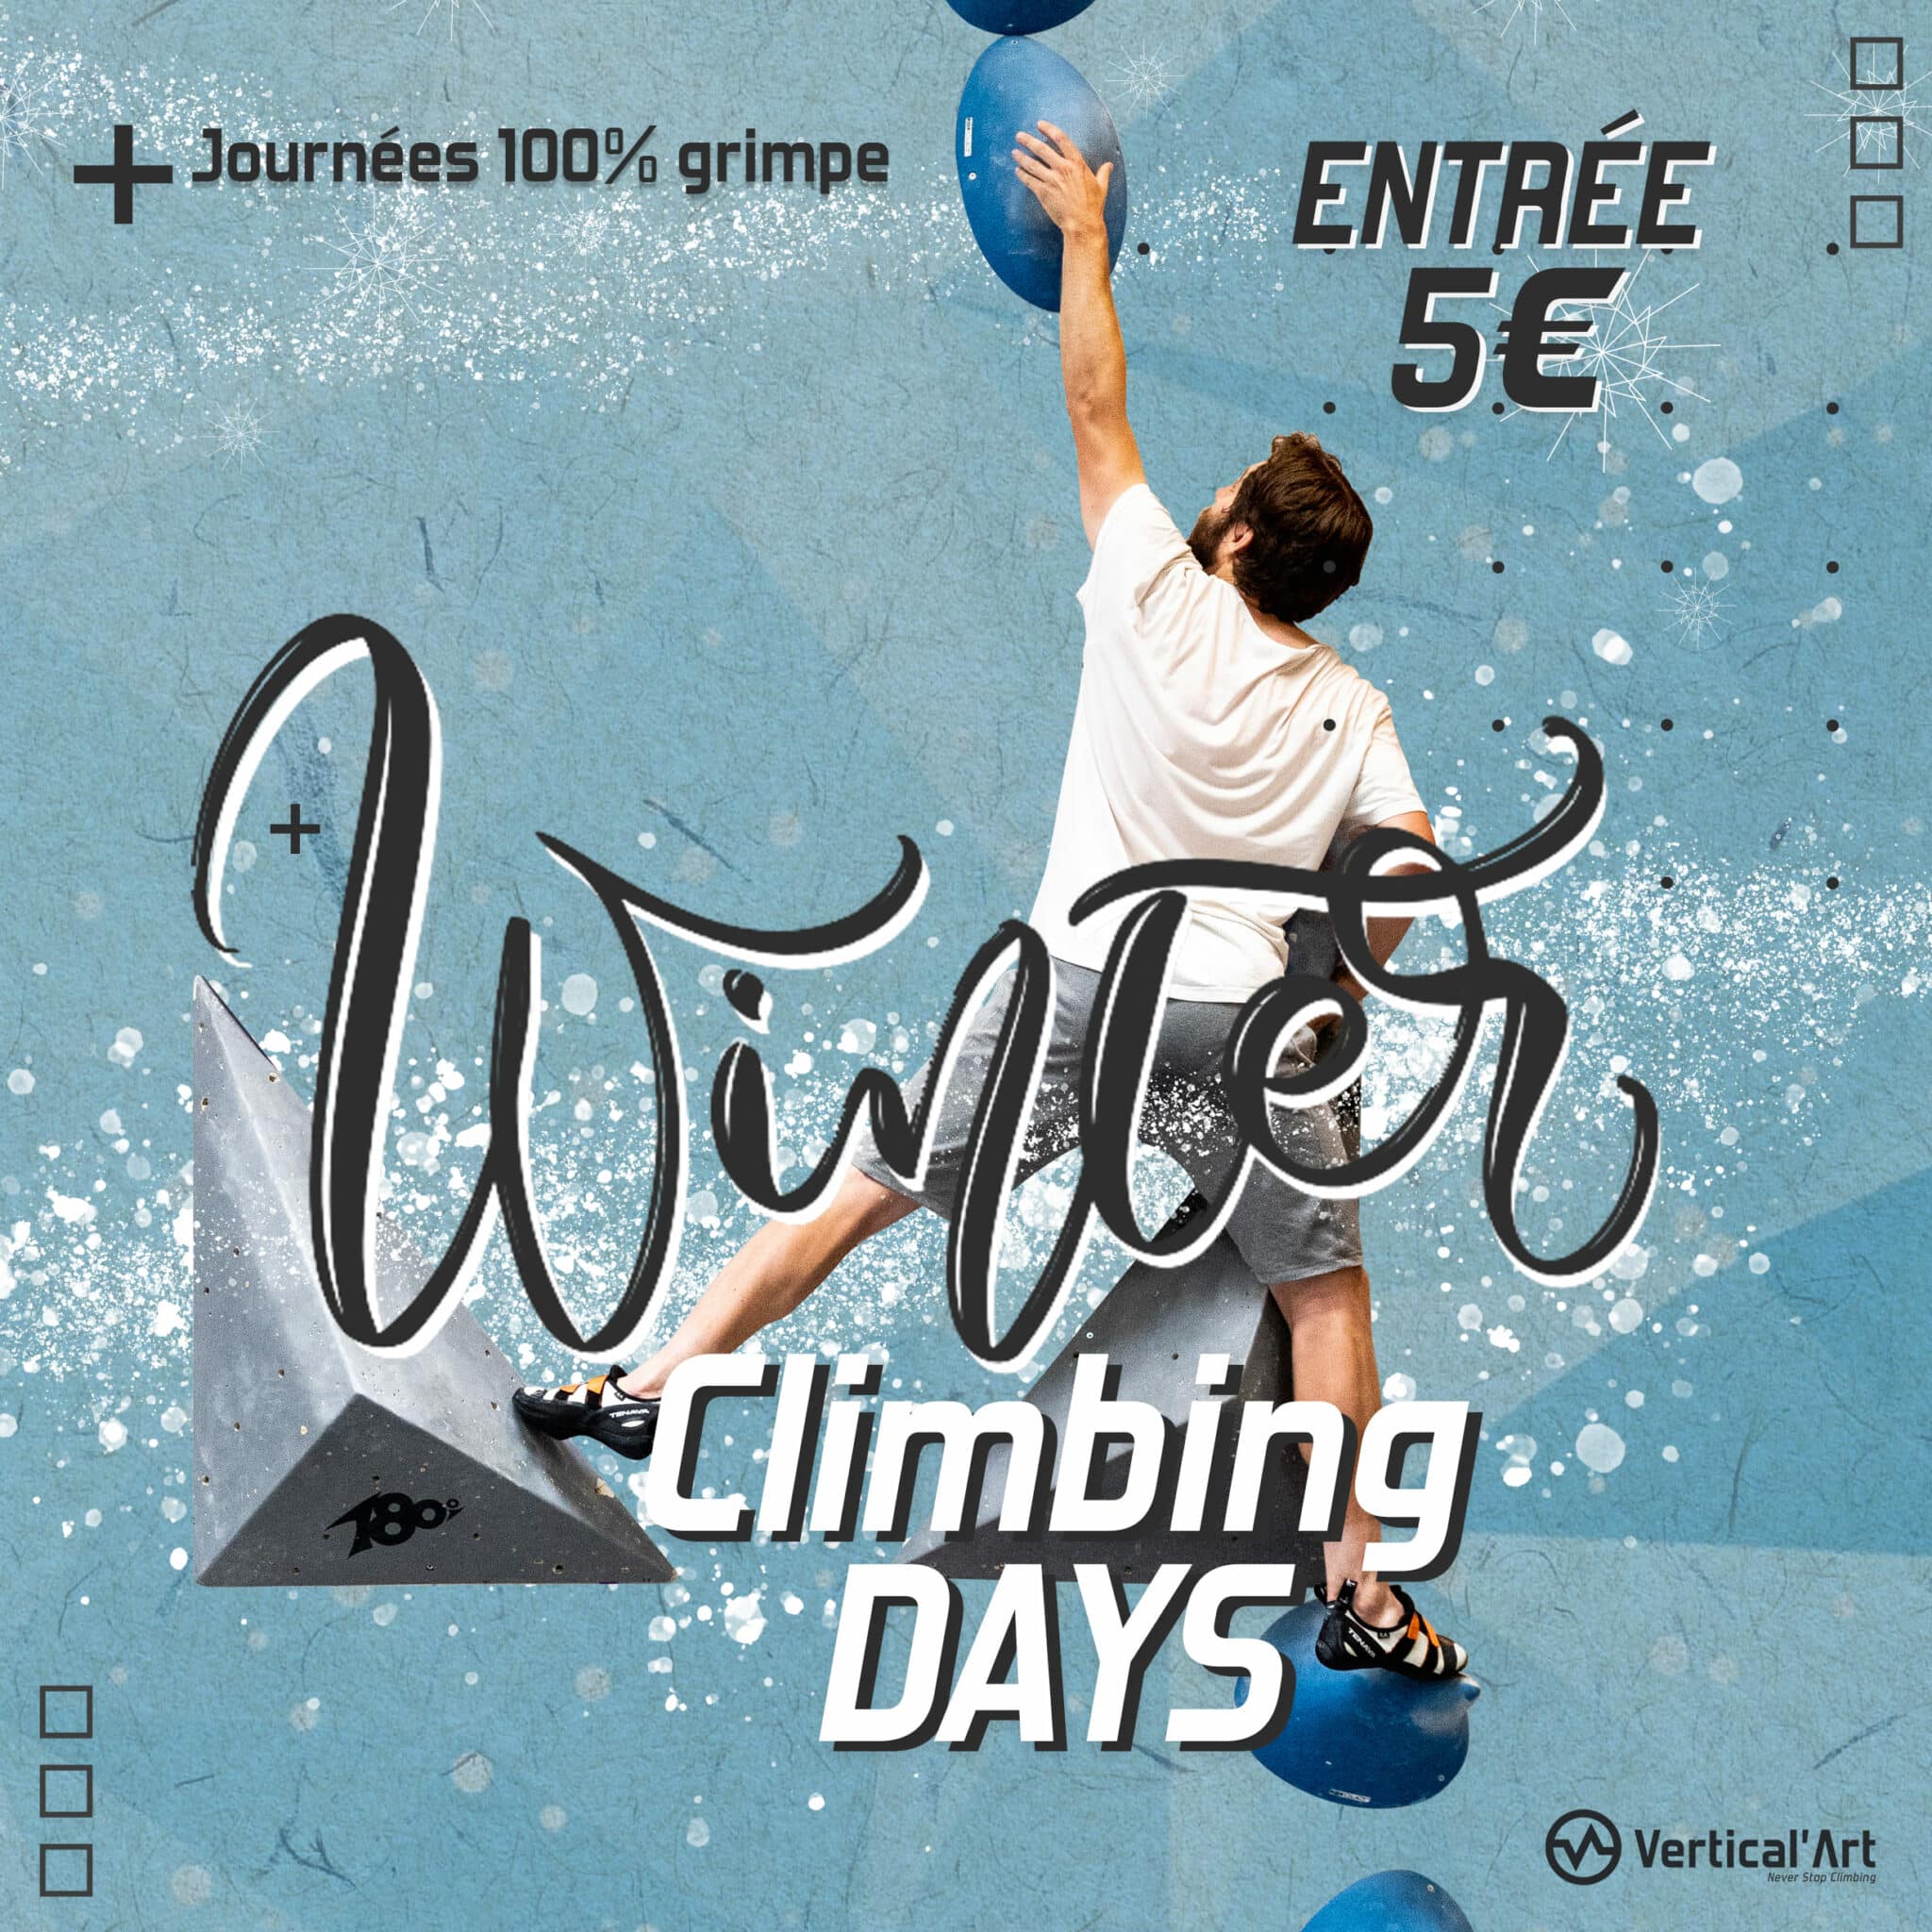 Winter Climbing Days à Vertical’Art, escalade gratuite pour tous pendant les vacances d'hiver